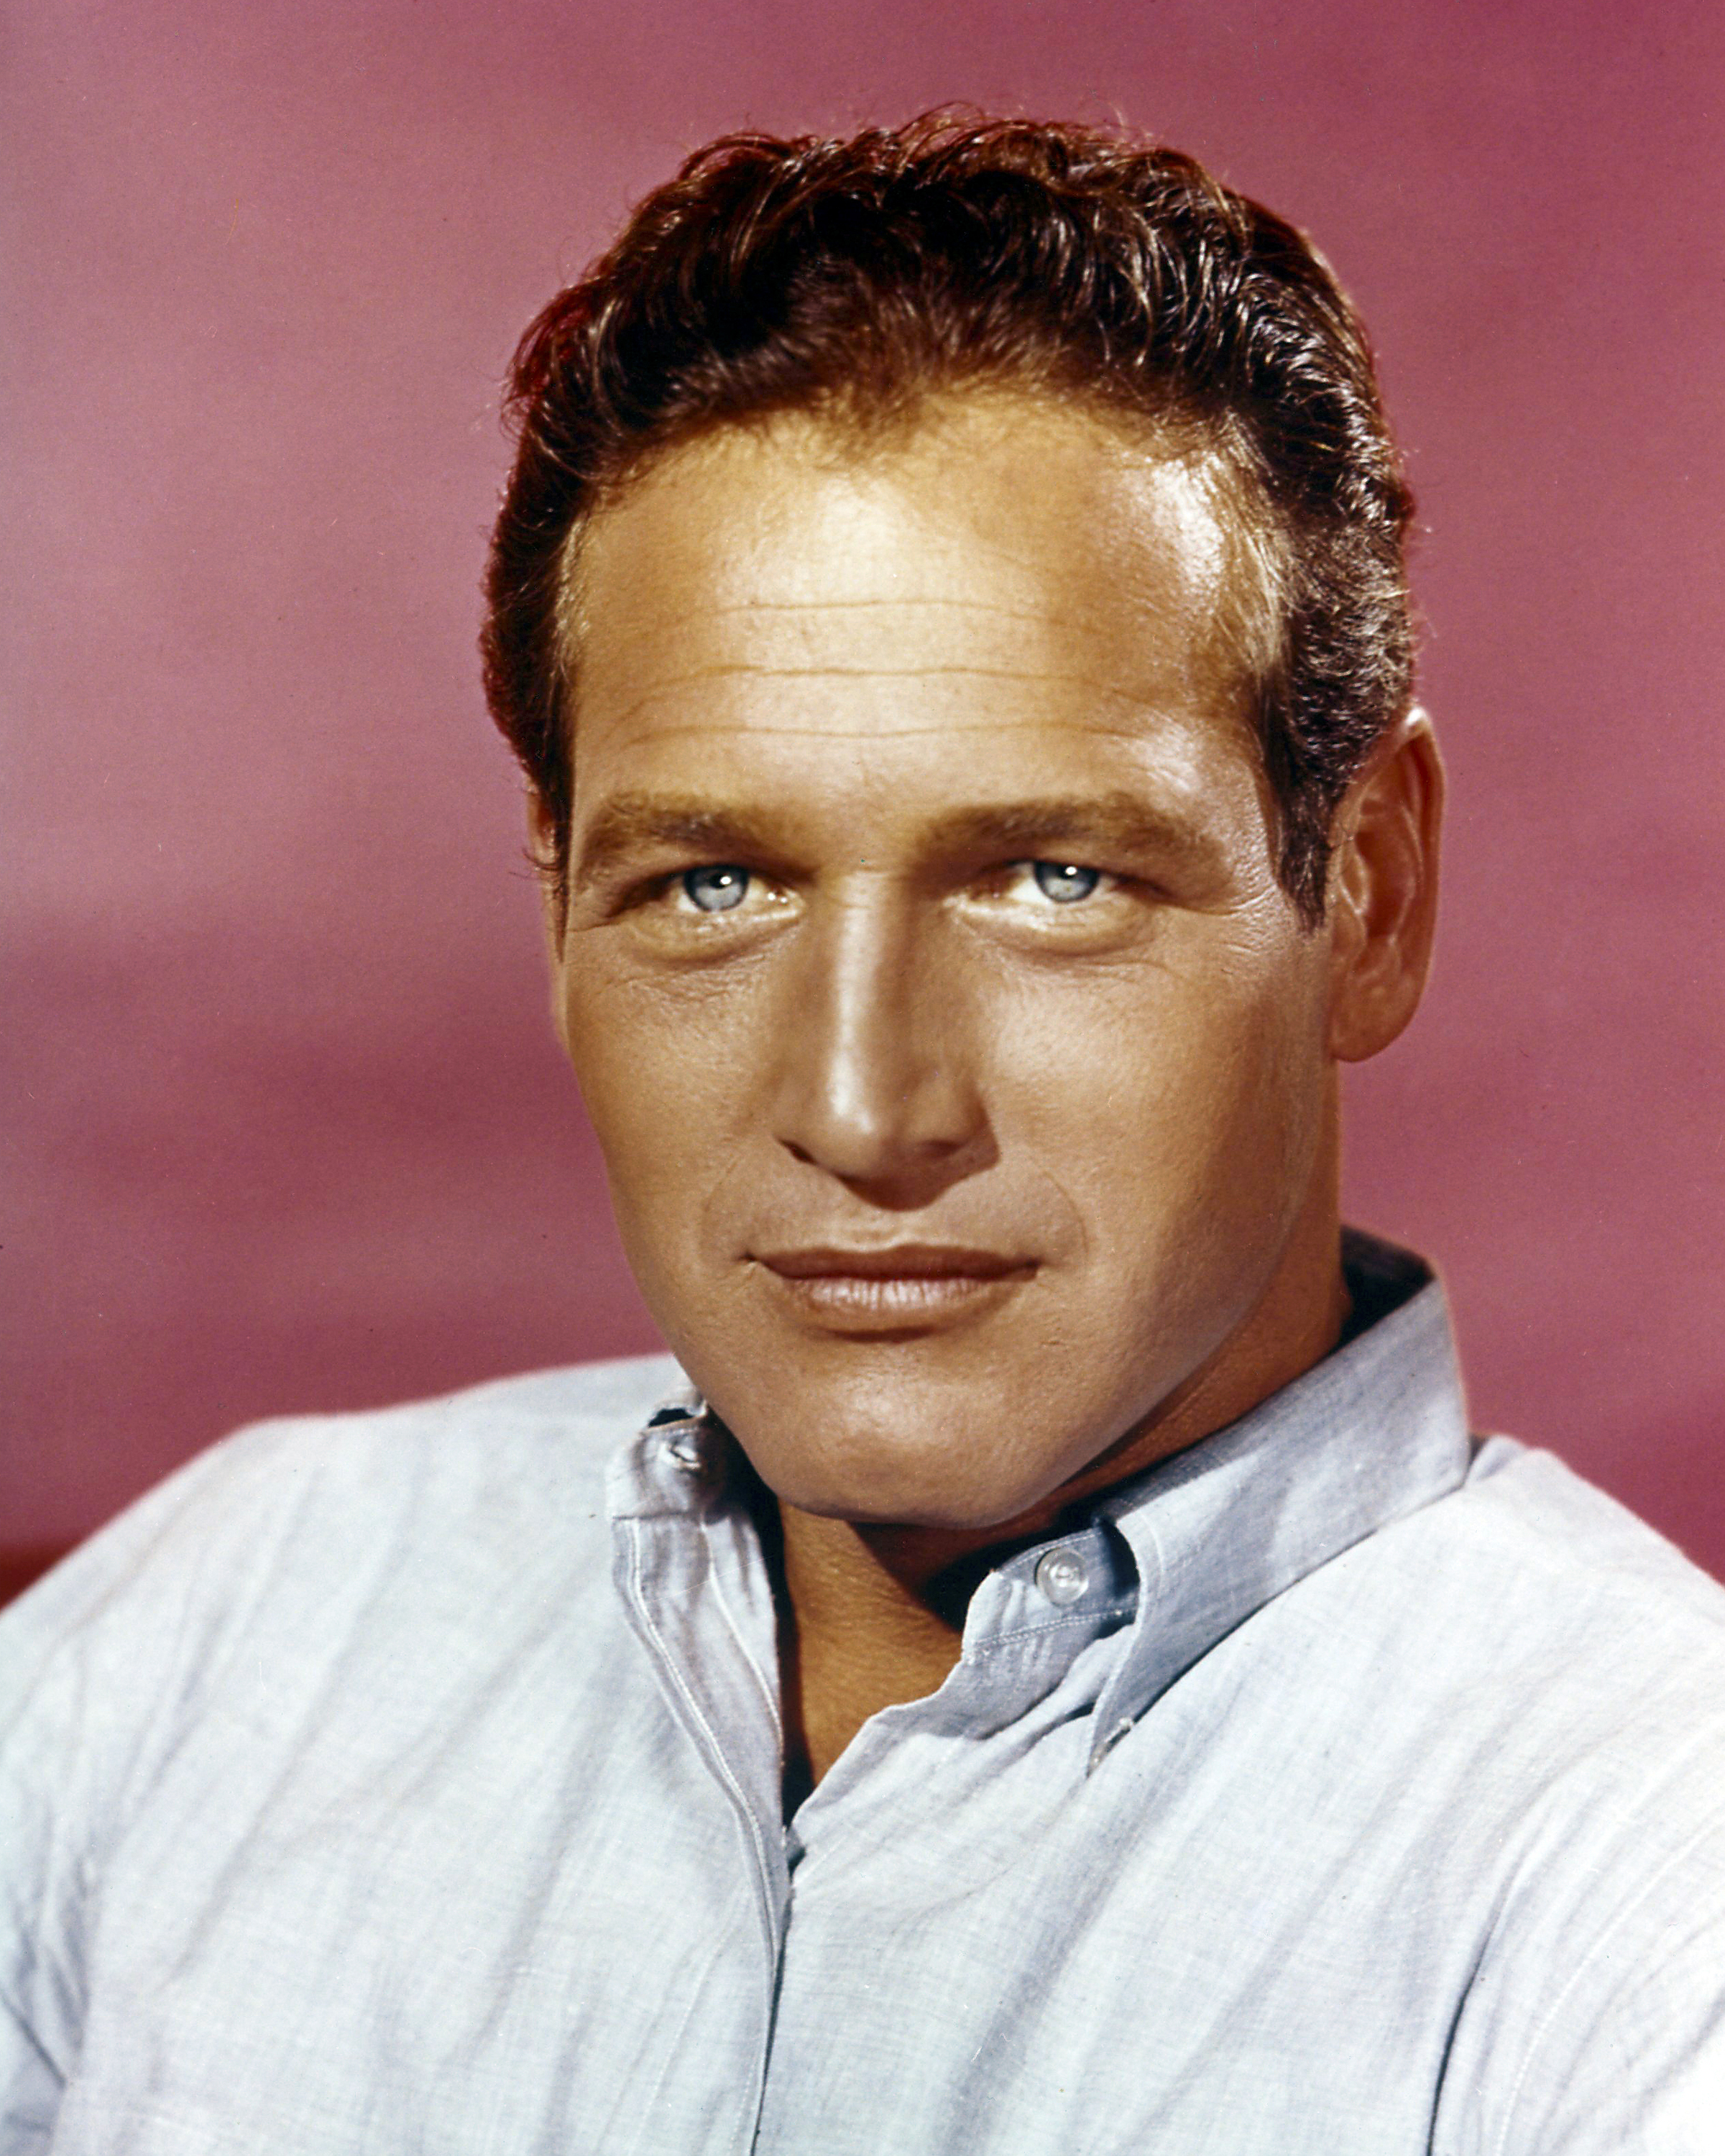 Seran los baos de cubitos de hielo el secreto de belleza de Paul Newman?